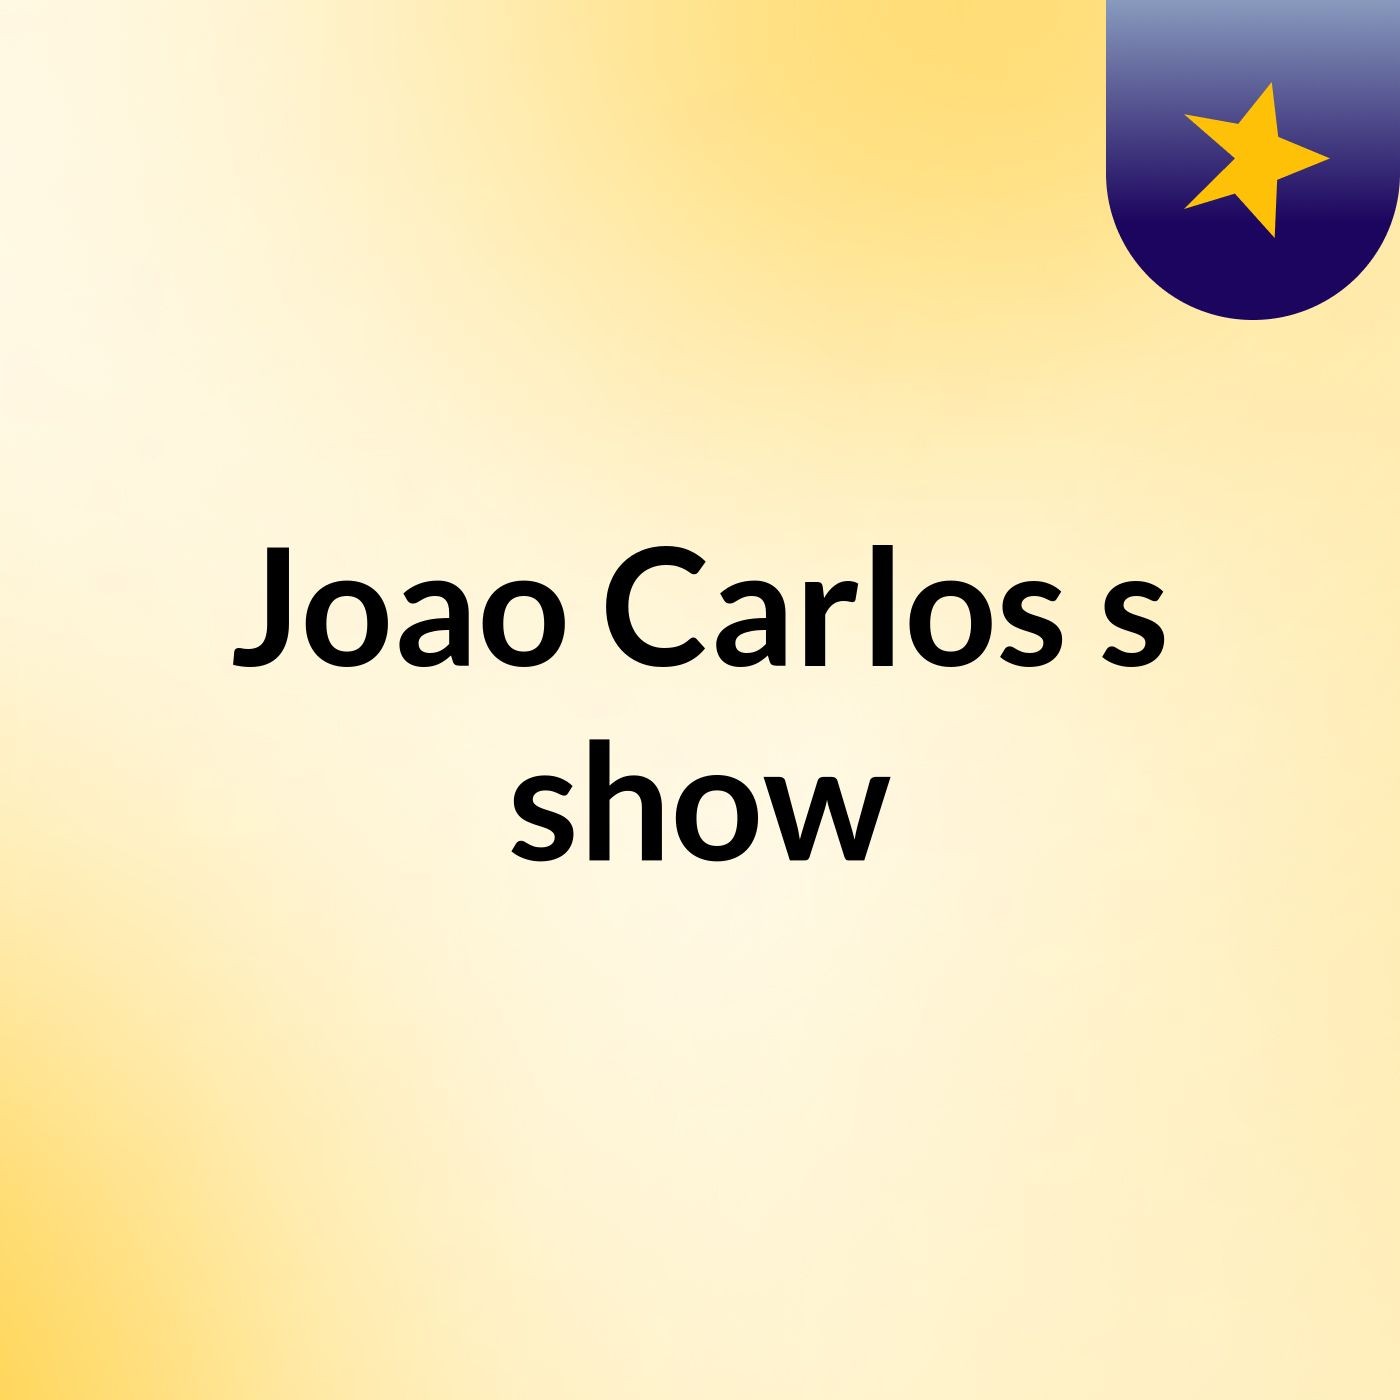 Joao Carlos's show